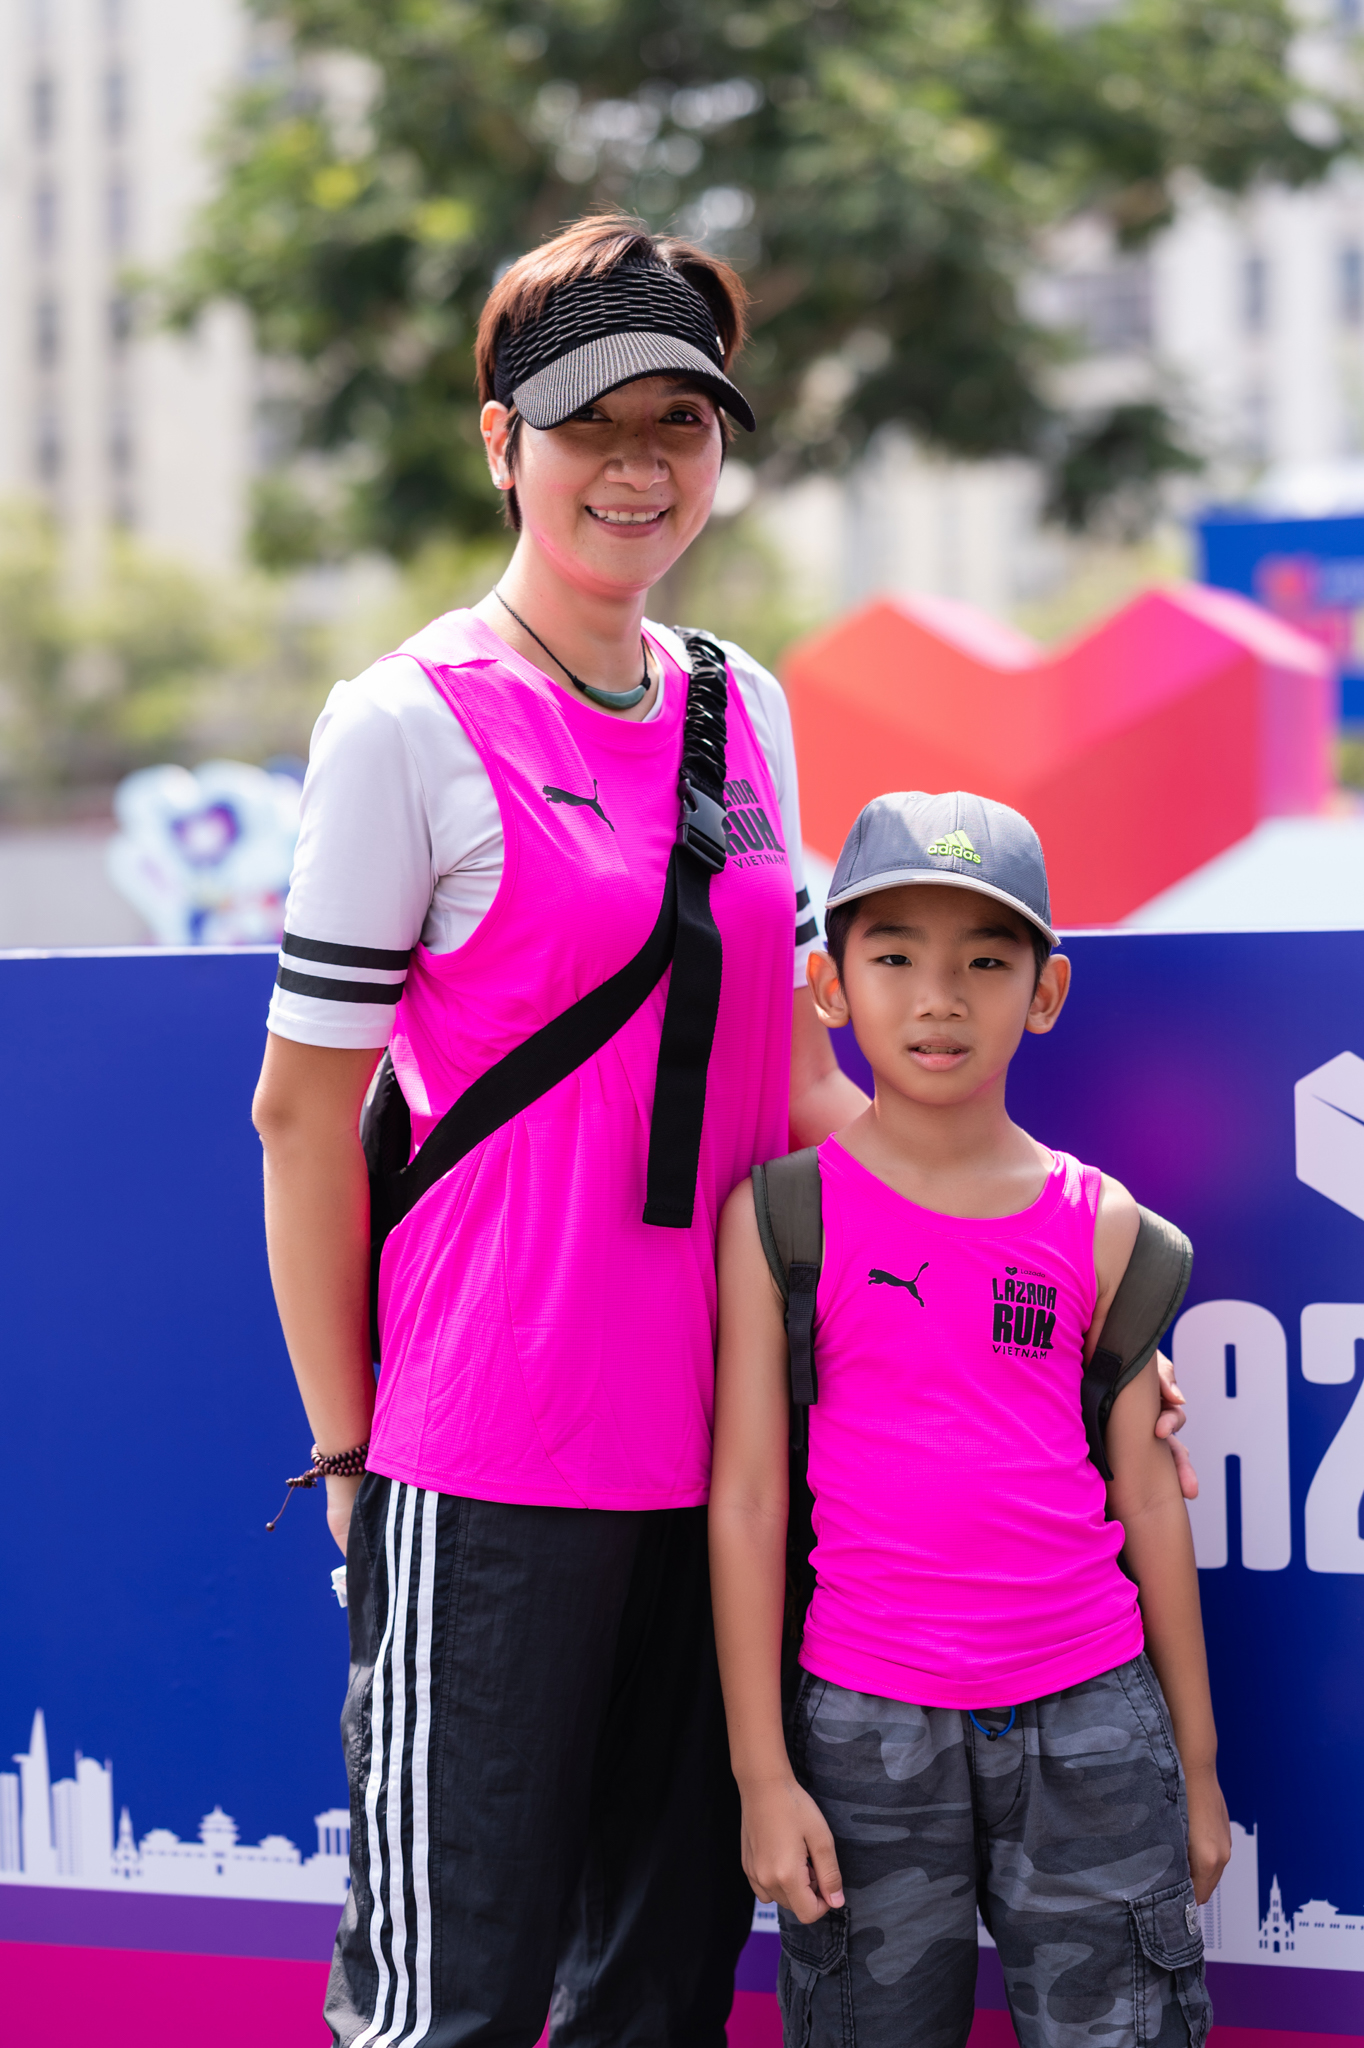 Giải chạy Marathon trở thành sân chơi mới mà nhiều bố mẹ hiện đại lựa chọn cho trẻ vận động - Ảnh 3.